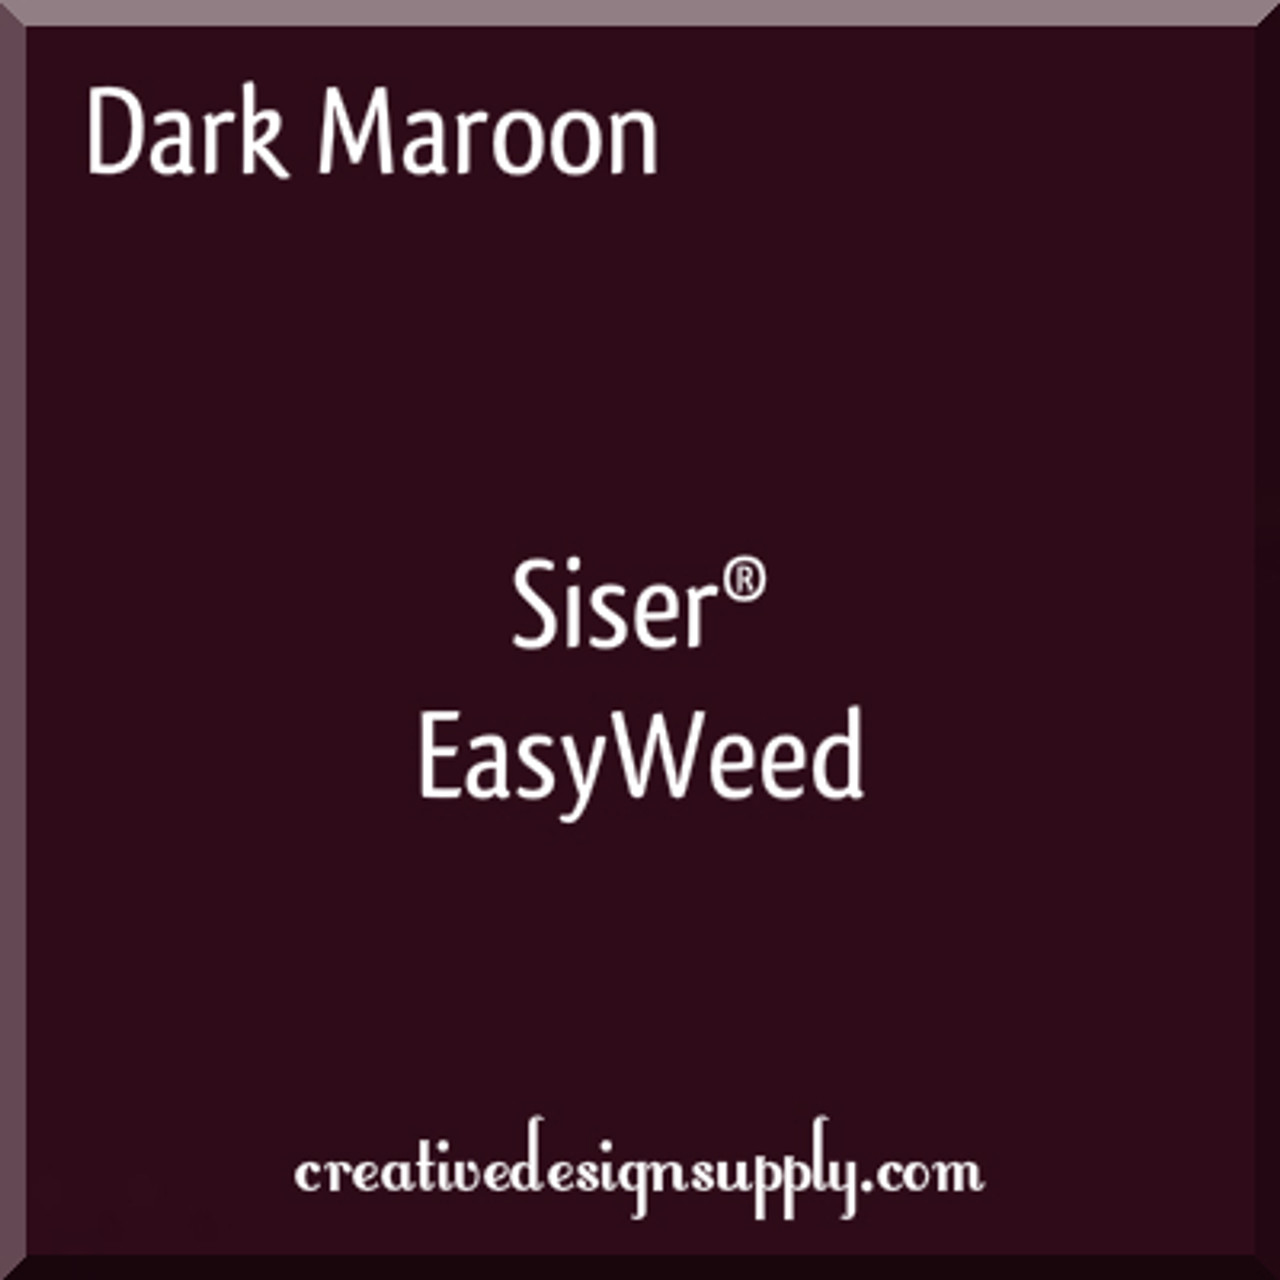 Dark Maroon Siser EasyWeed